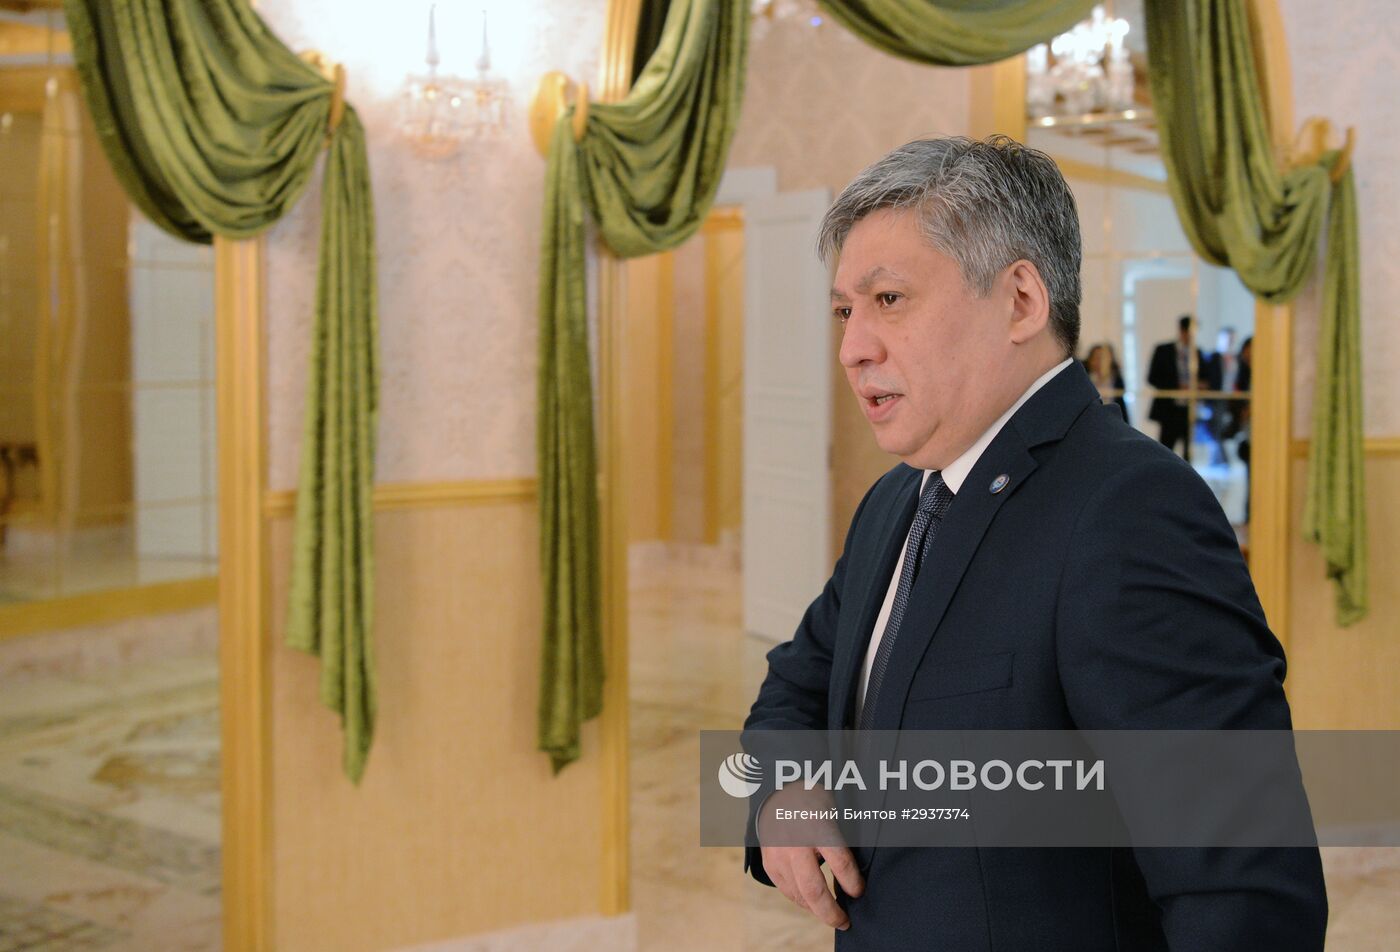 Министр иностранных дел РФ С. Лавров принял участие в встрече глав МИД СНГ